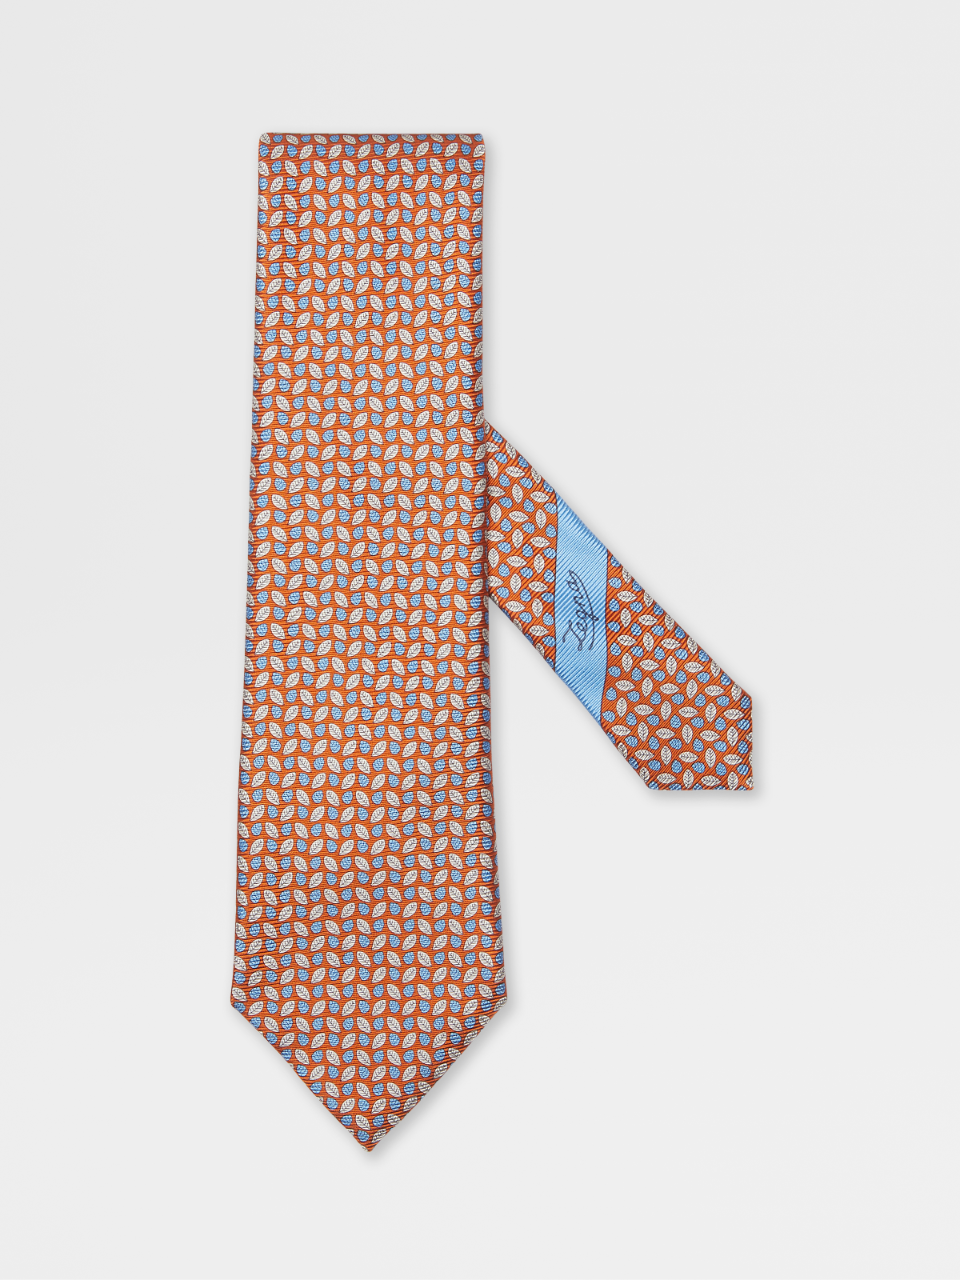 Orange Silk Tie